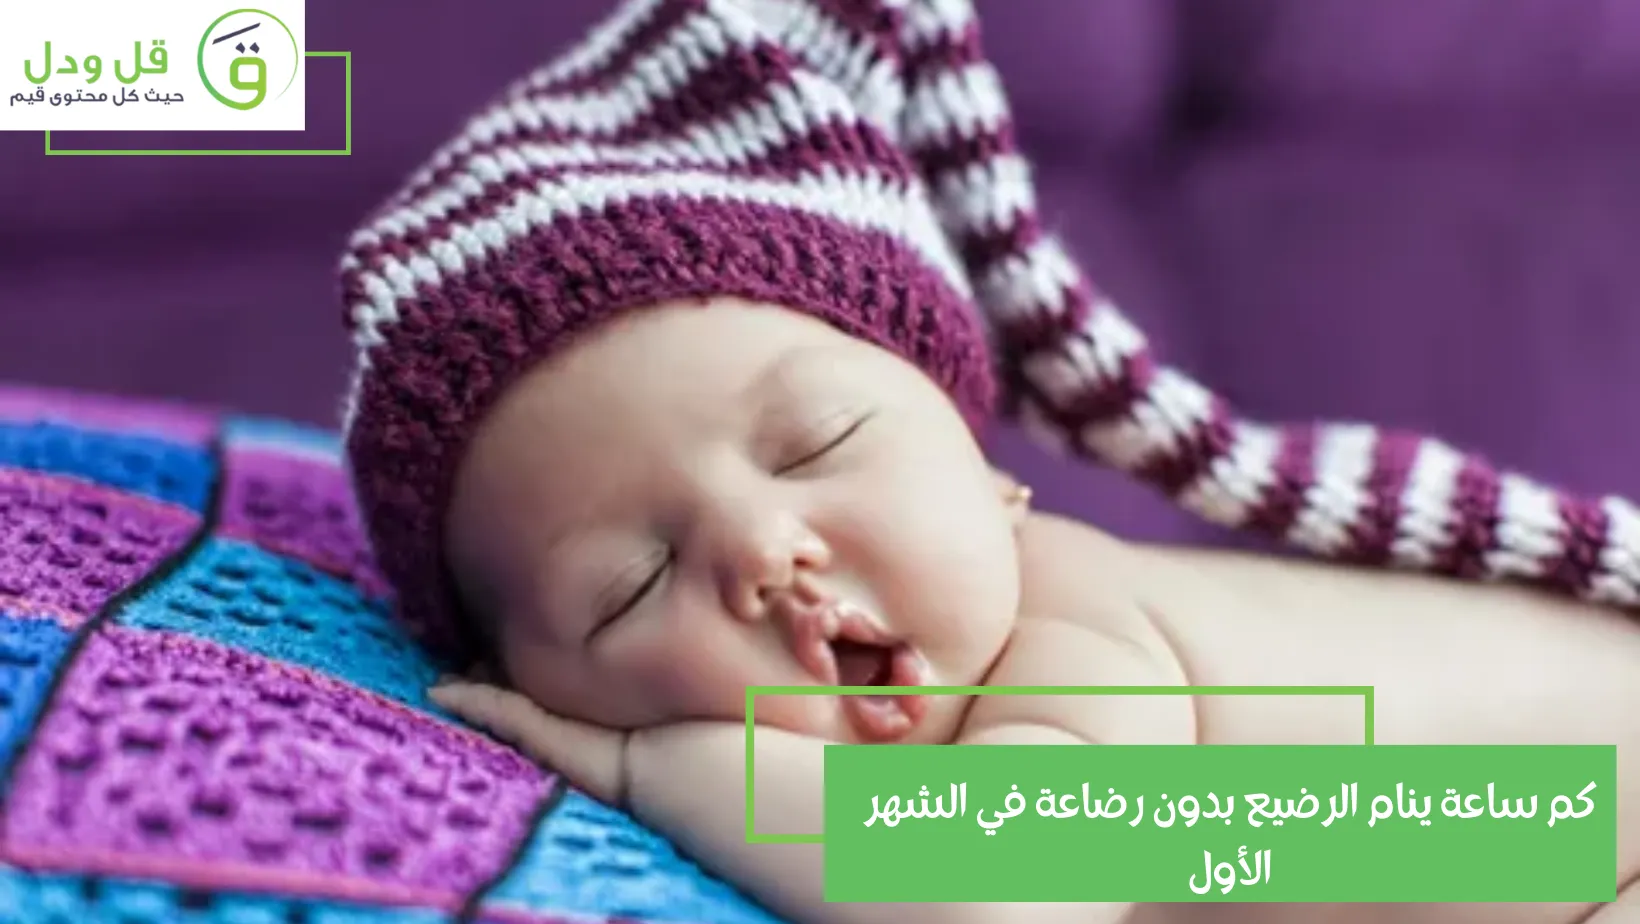 كم ساعة ينام الرضيع بدون رضاعة في الشهر الأول